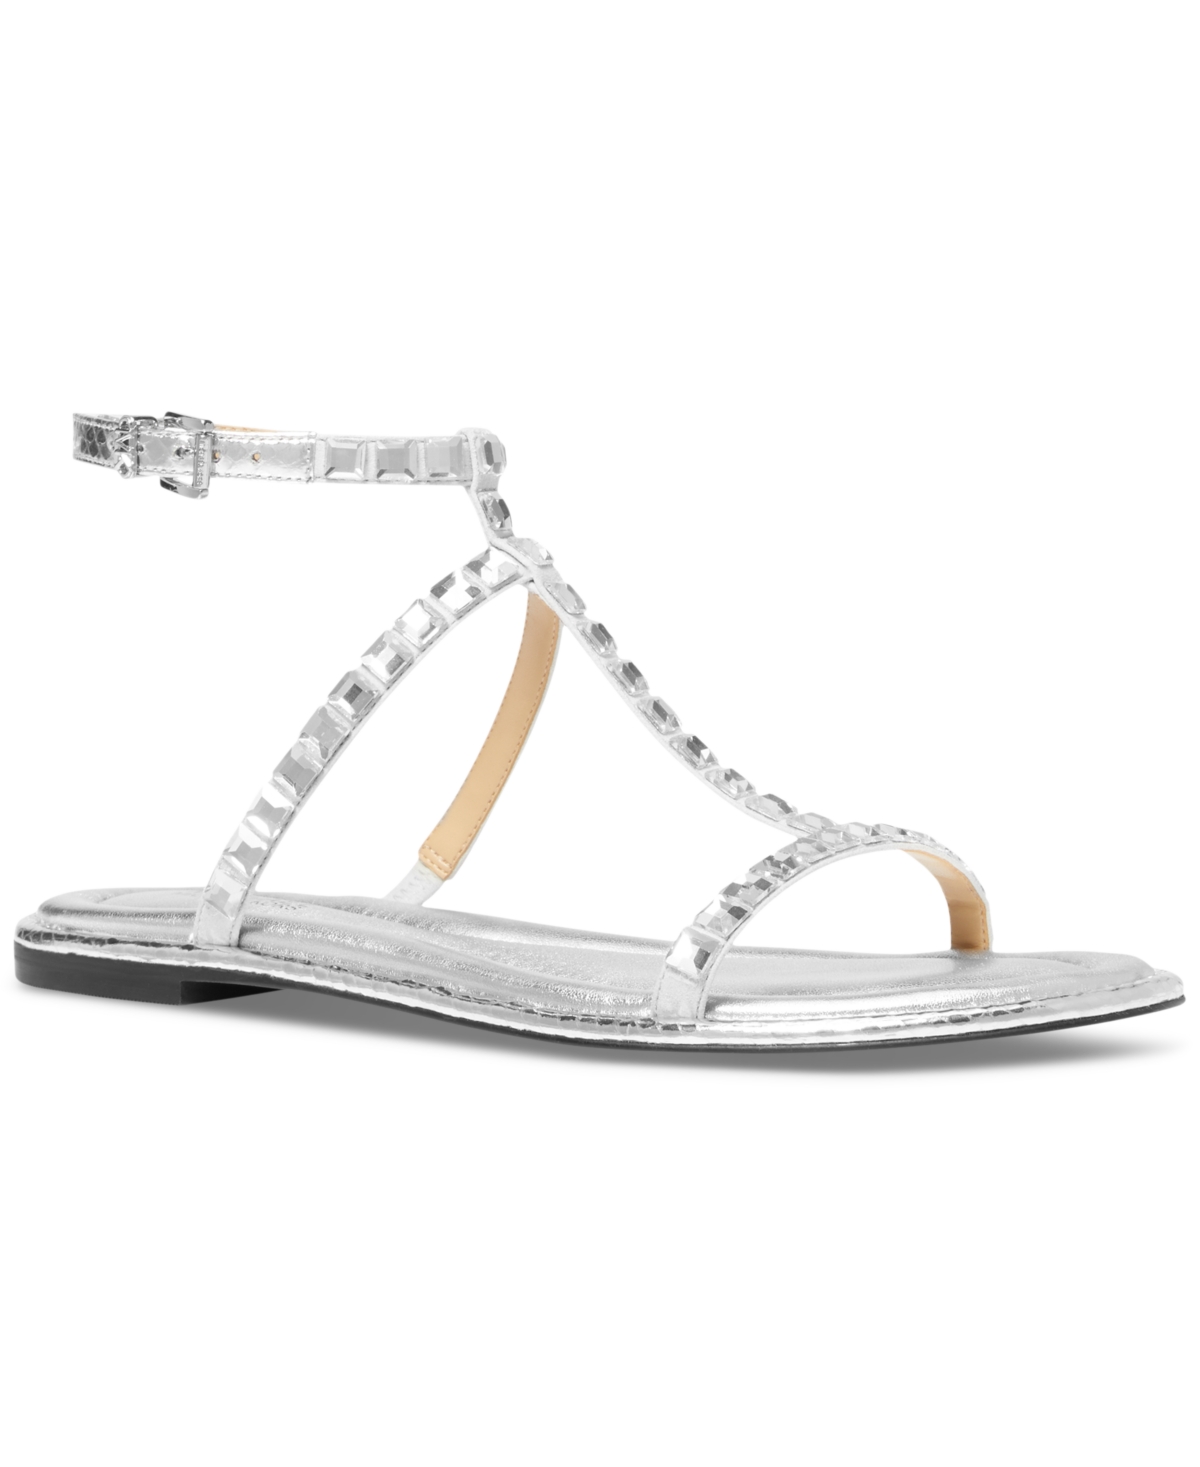 Michael Kors Women's Celia Flat Sandals In Silver